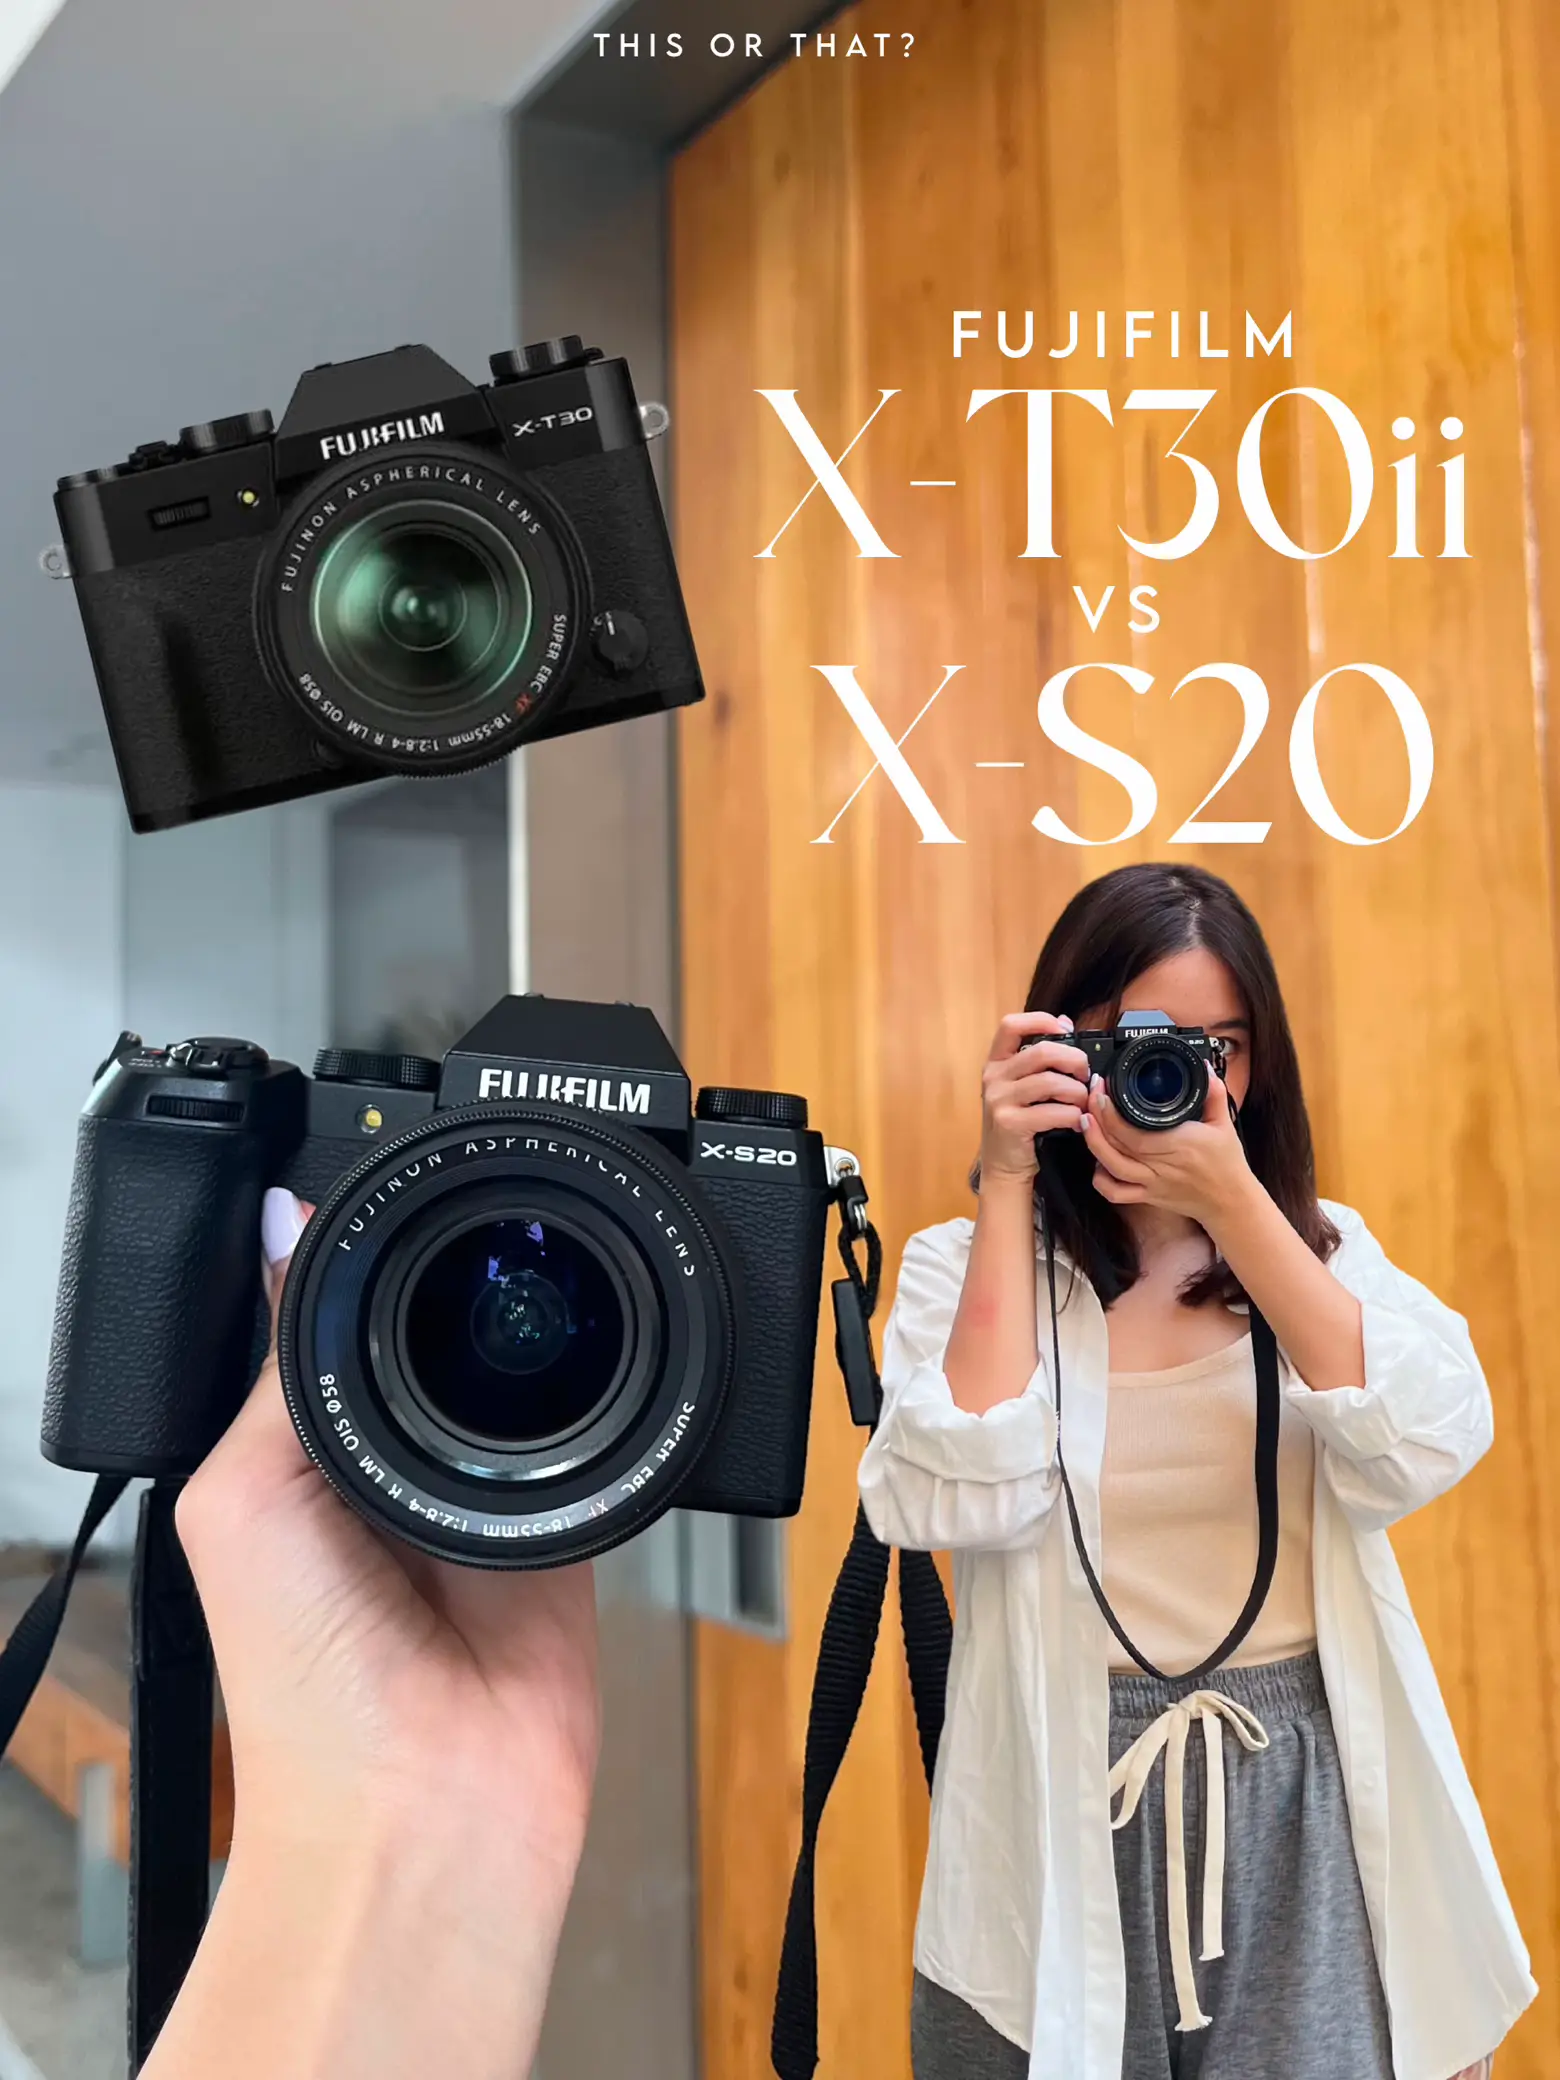 Fujifilm X-S20 vs Fujifilm X-T5 - Which is Better?